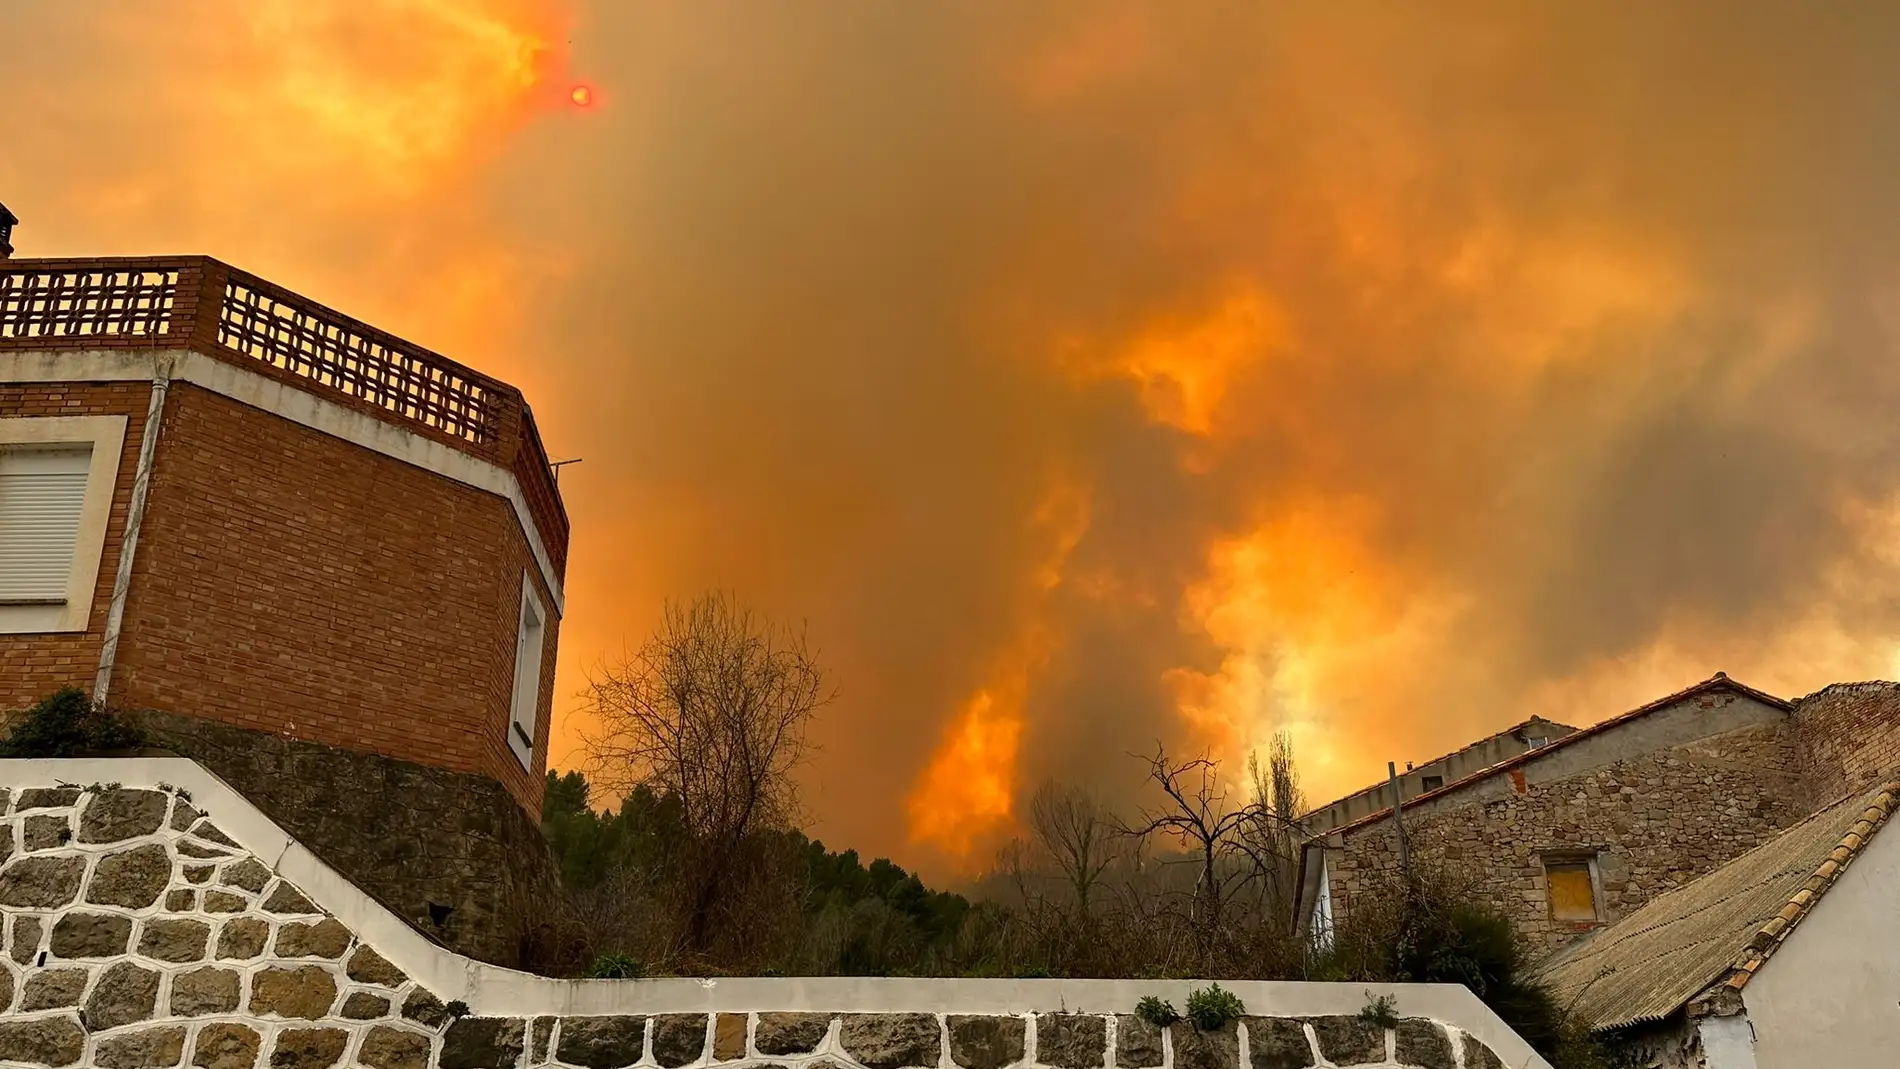 Imágenes y videos del incendio forestal en el barranco del Sentenal